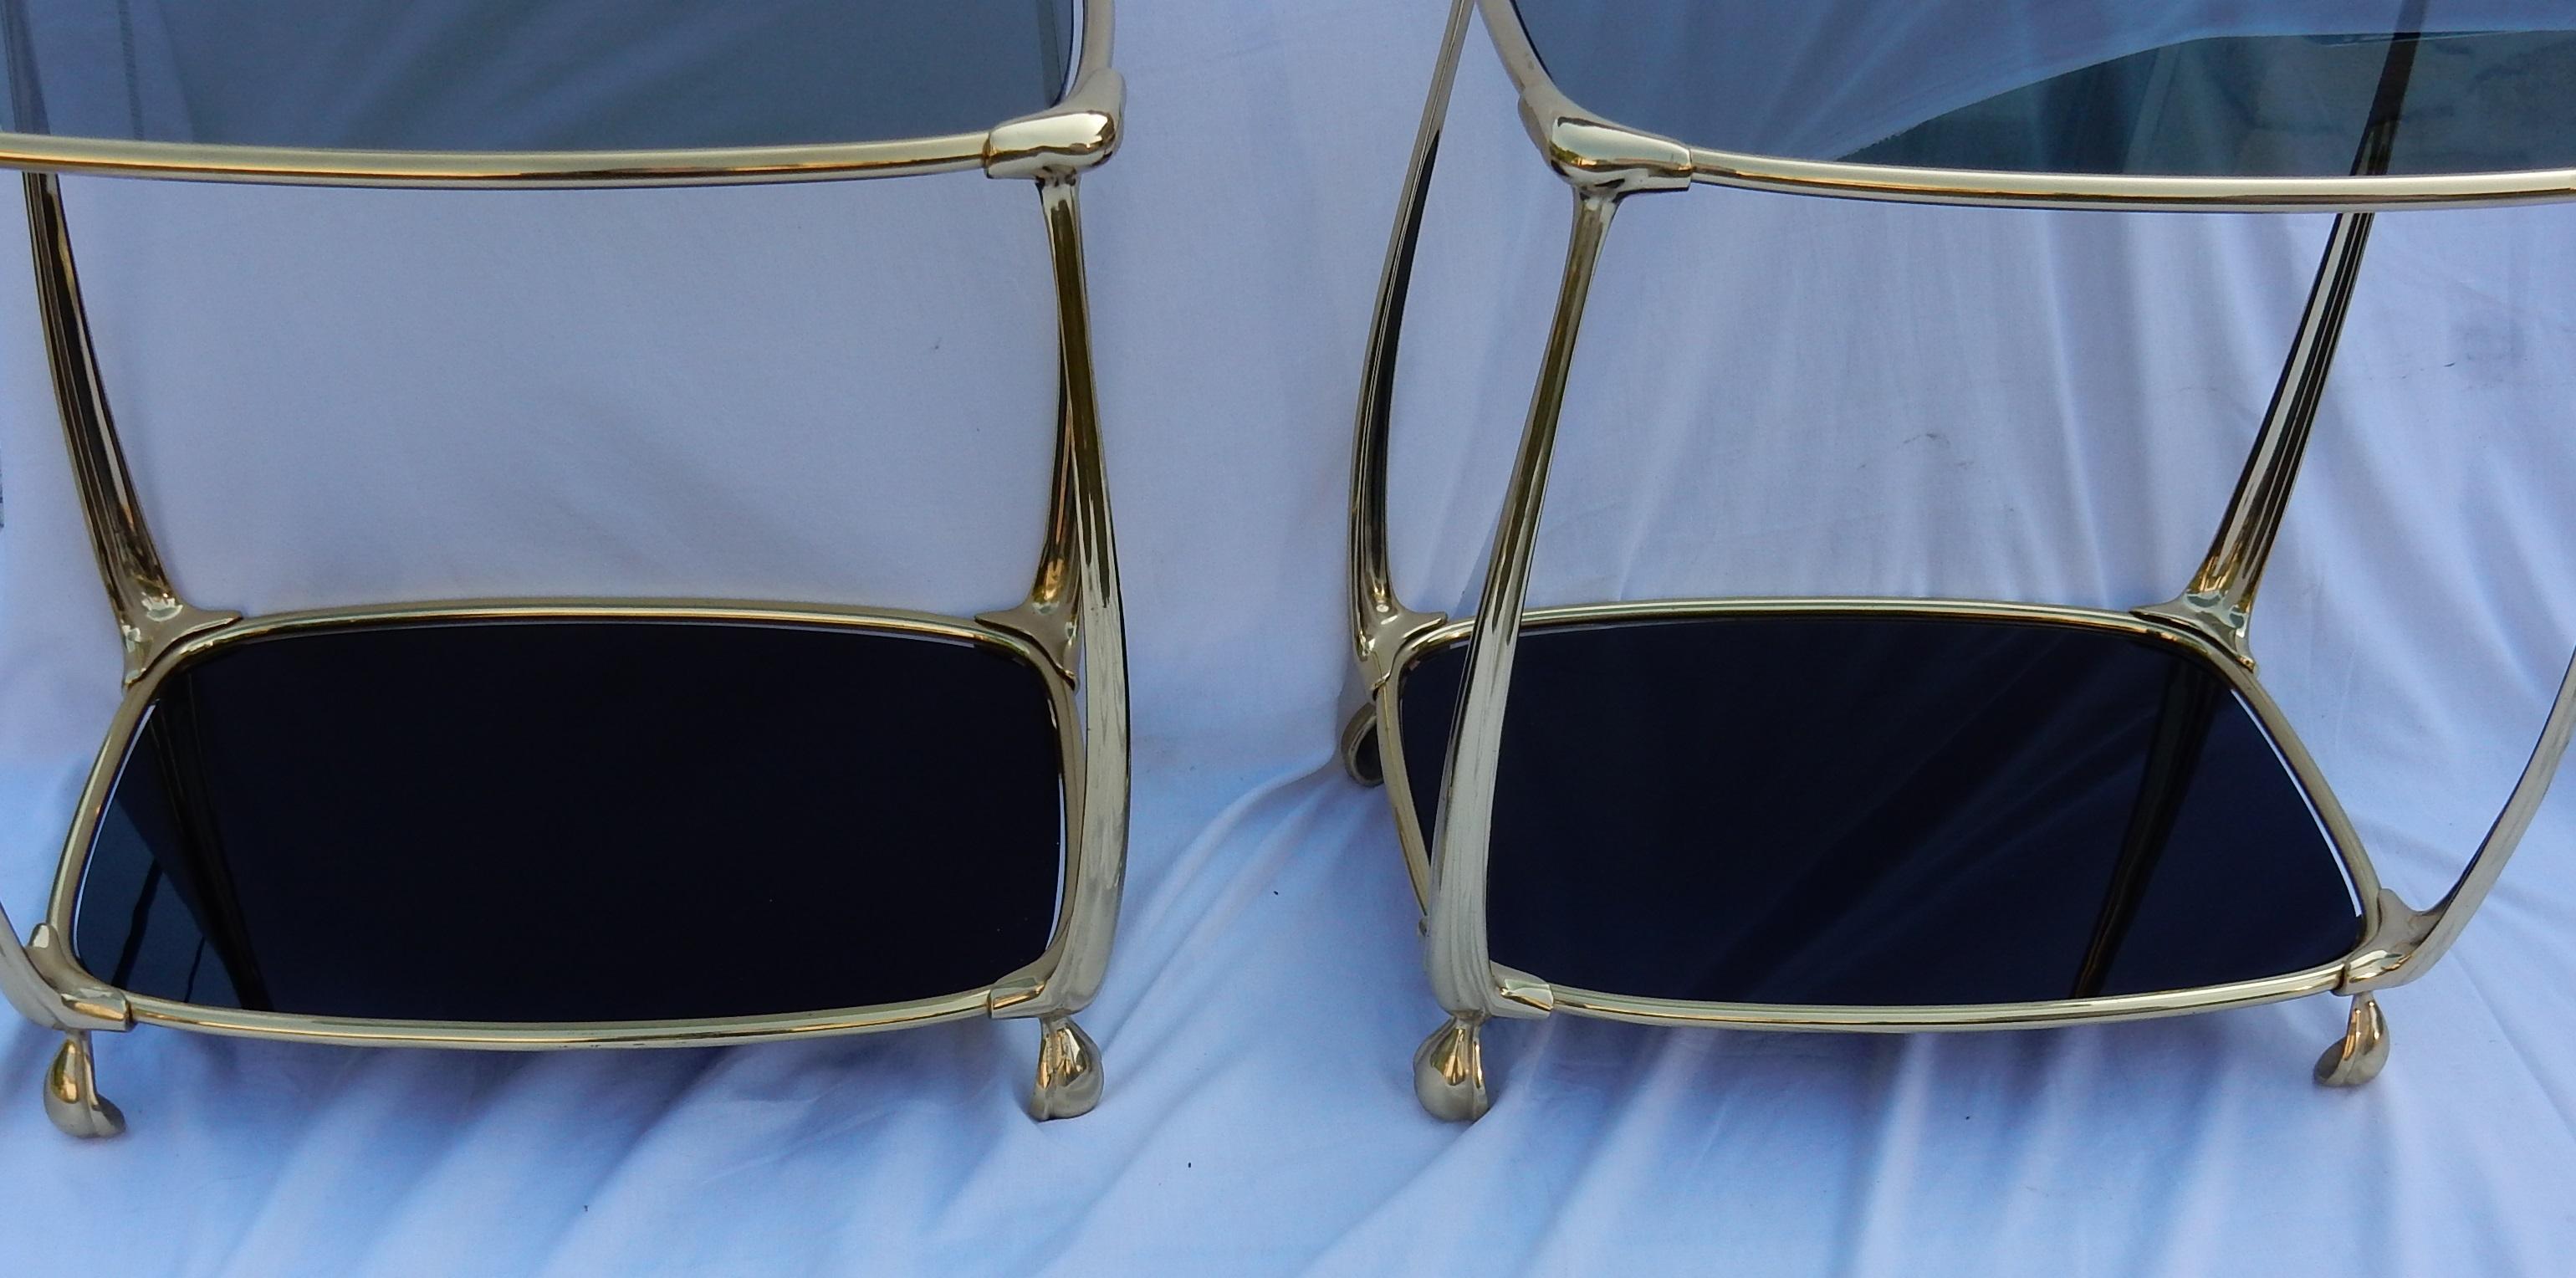 Paar Tische im Jugendstil aus vergoldeter Bronze, Ablagen aus Rauchglas und schwarzem Opalin, ausgestellter Sockel, um 1970-1980, alles verschraubt und Verstärkungen an den Winkeln. Guter Zustand.

      